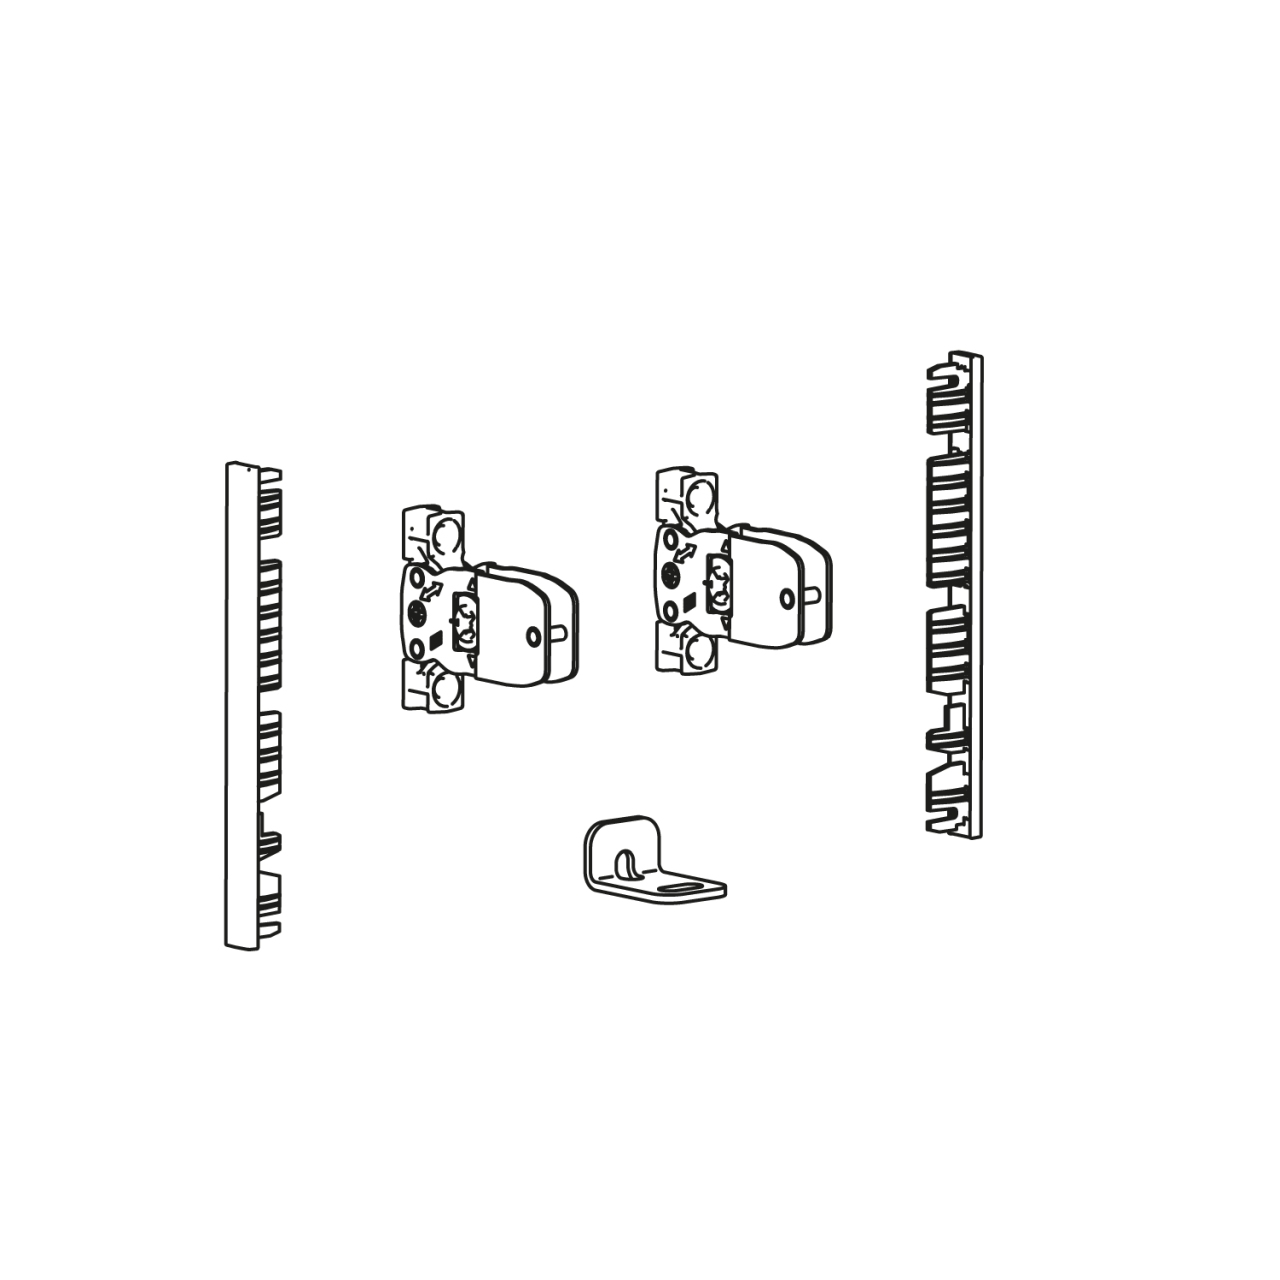 HETTICH AvanTech YOU Verbinderset für Innenfront zum Selbstablängen, Nutzung mit Zarge, Systemhöhe 101, silber, 9257611